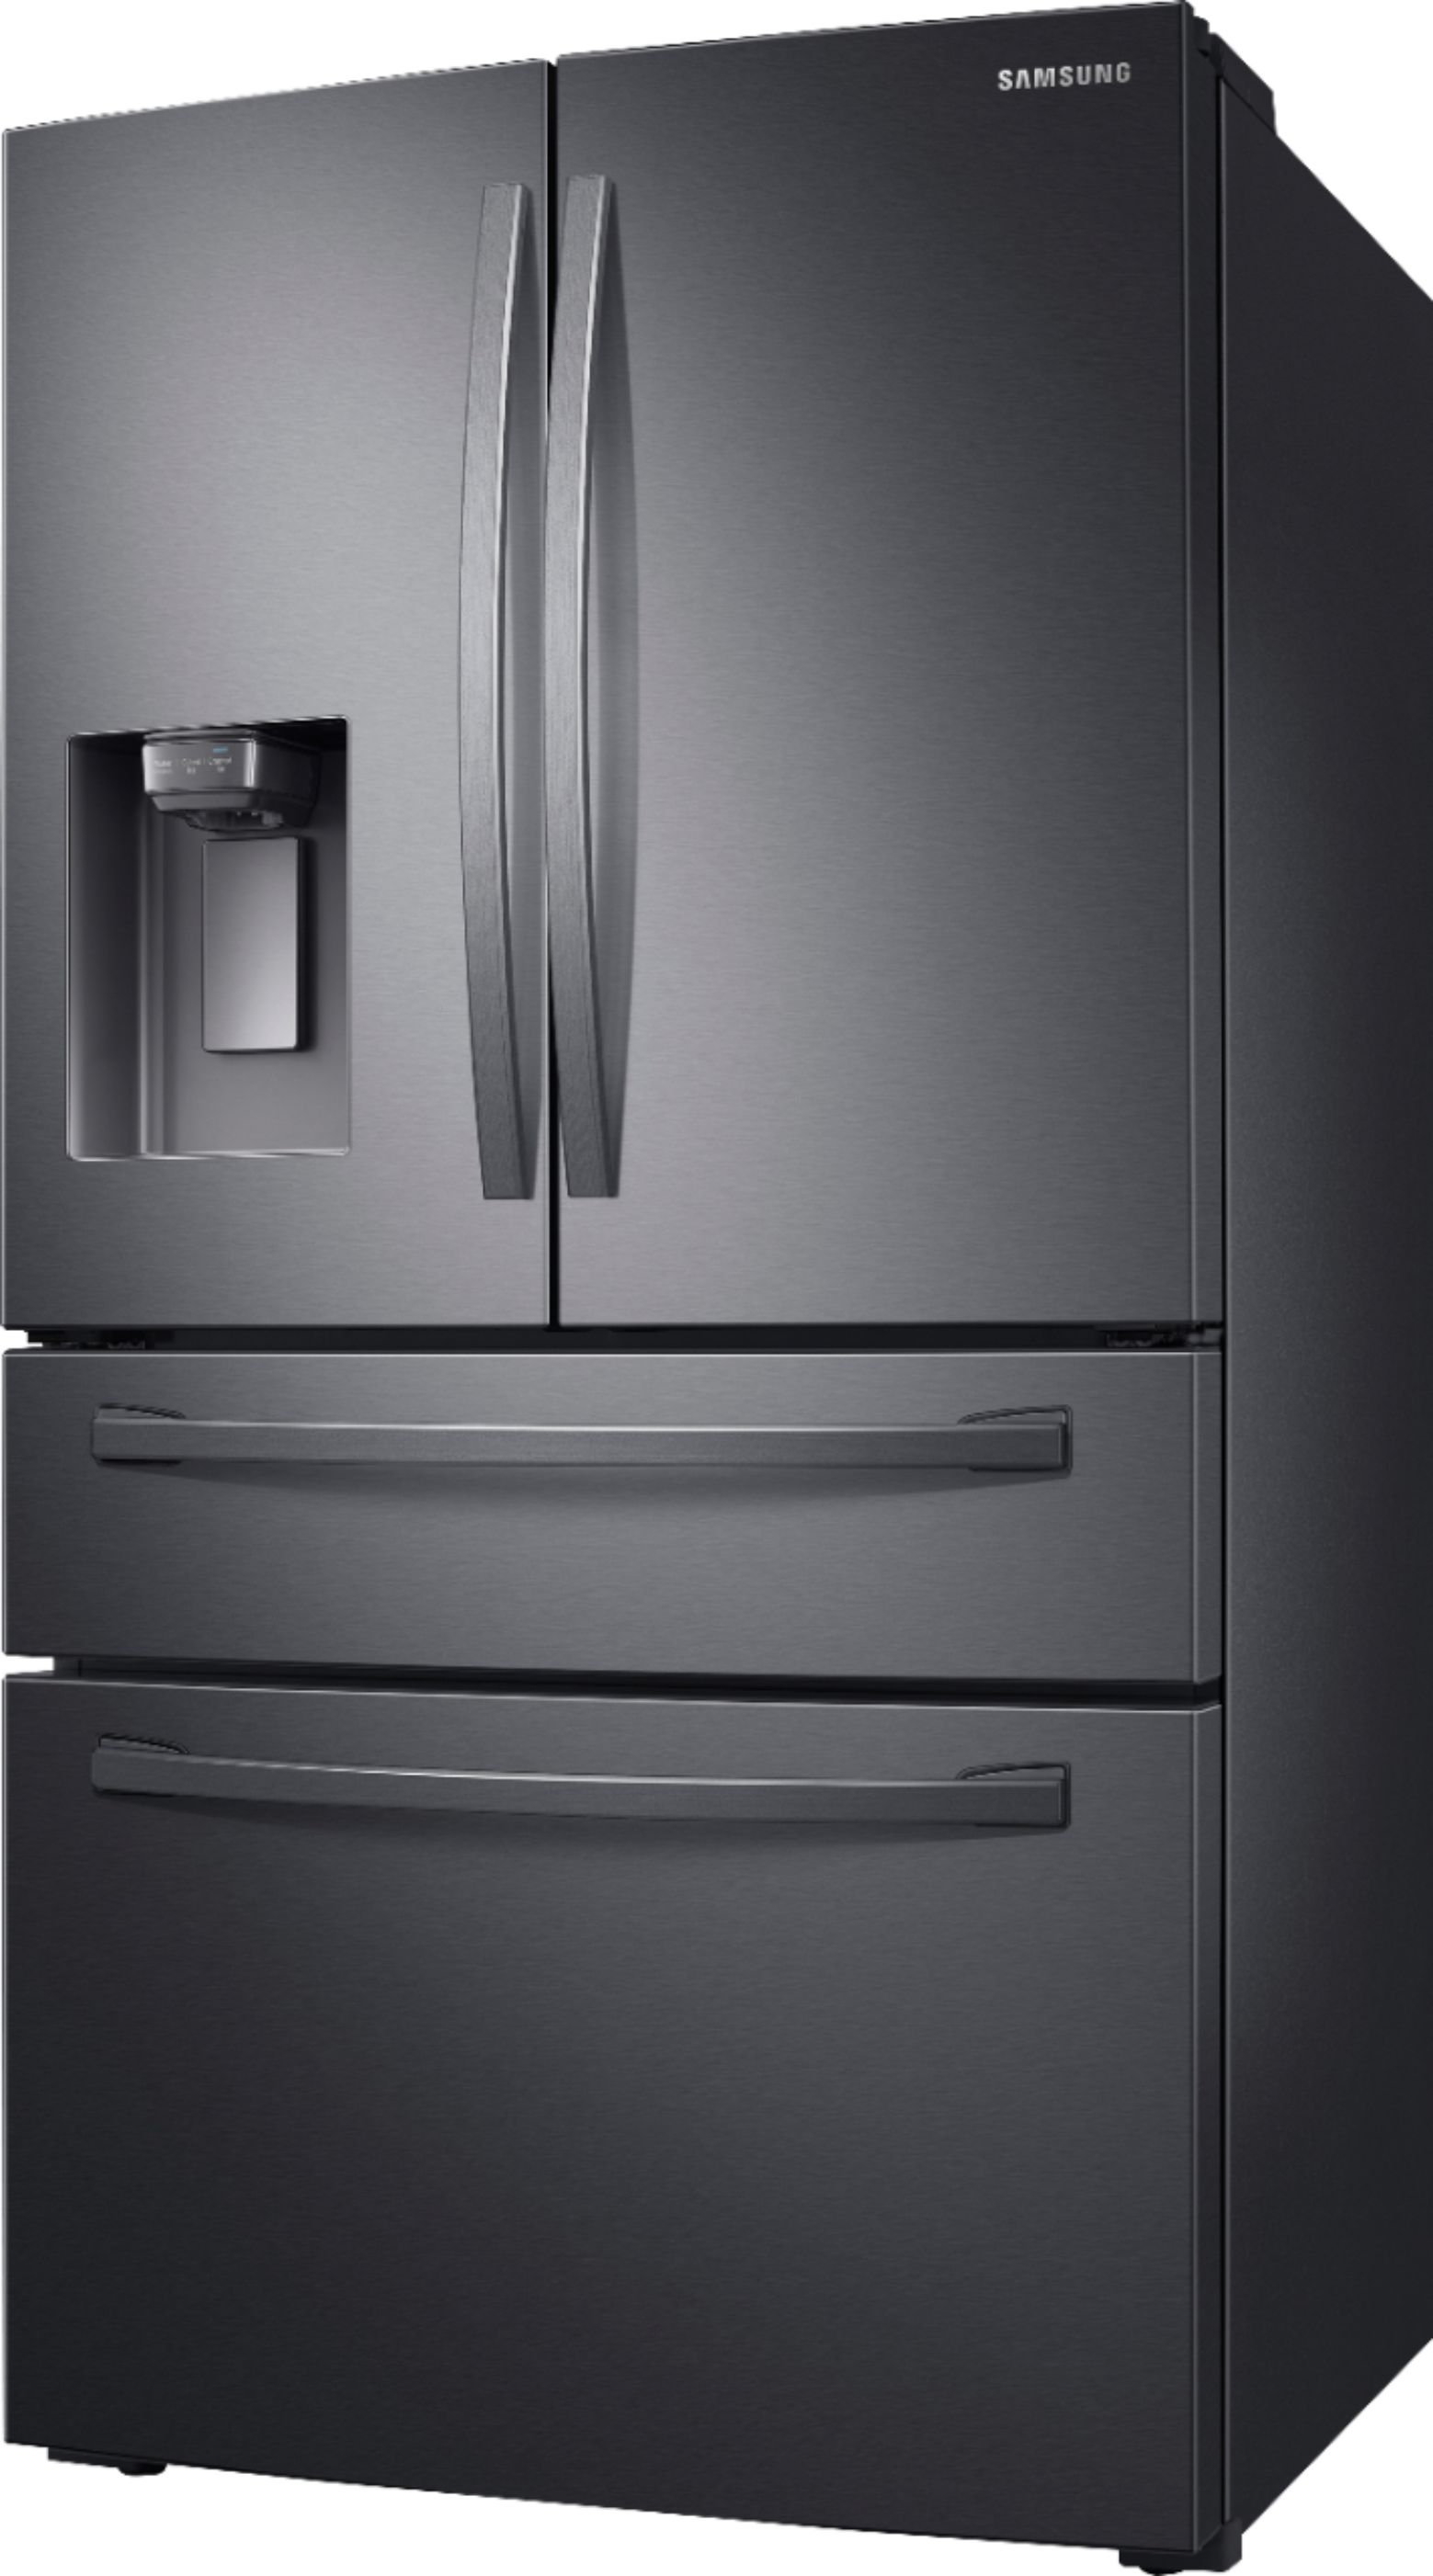 Samsung 28 cu. ft. 4-Door French Door Refrigerator with FlexZone ...